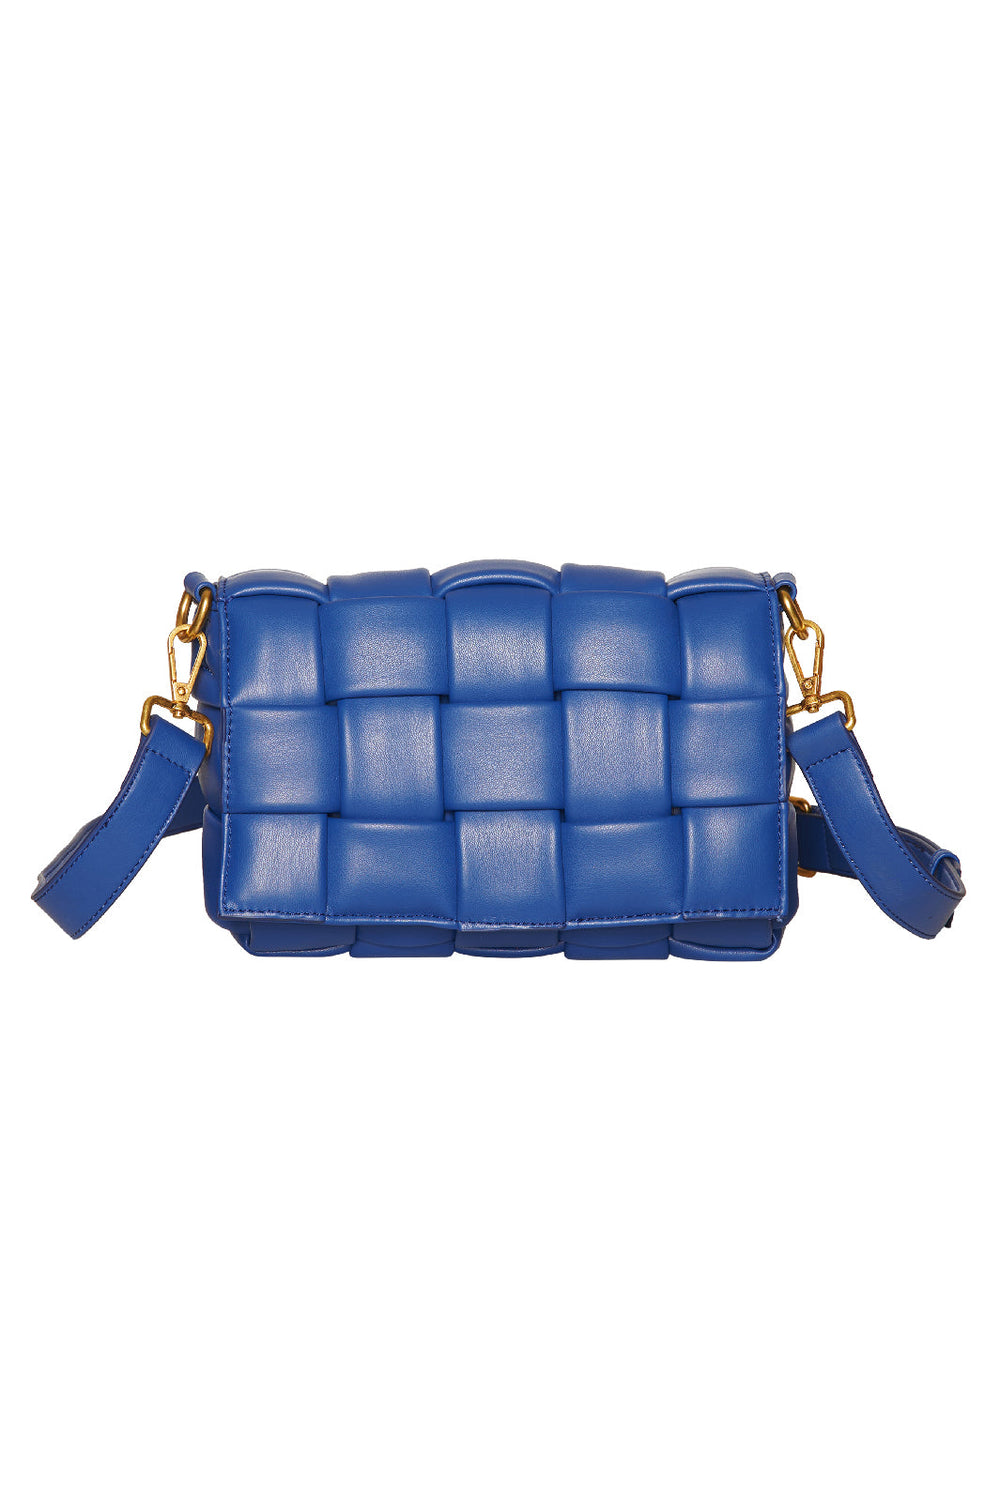 Noella - Brick Bag - Royal Blue Tasker 